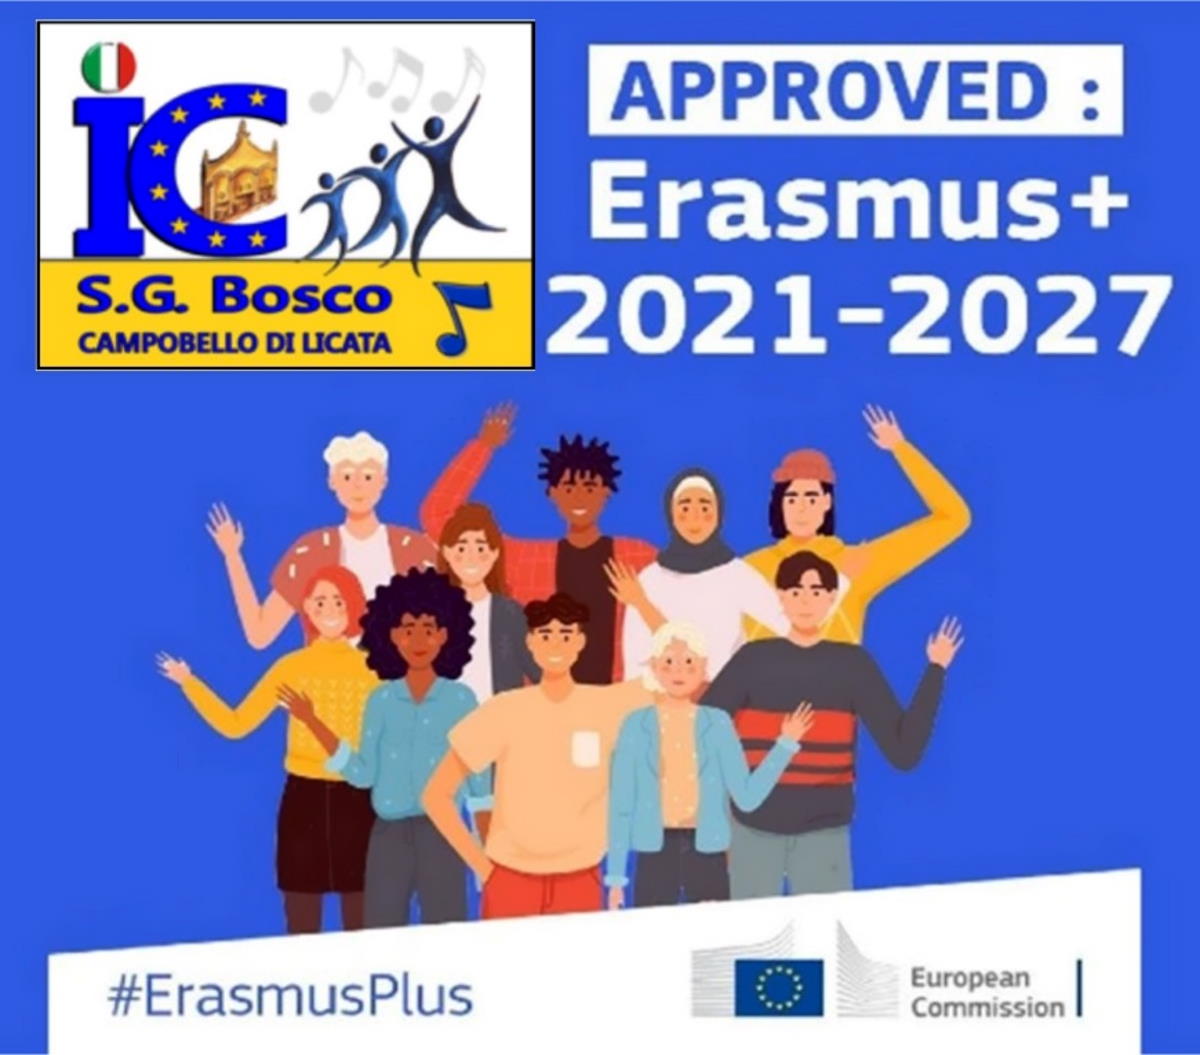 Accreditato al programma Erasmus+ 2021-2027 l’IC SG BOSCO di Campobello di Licata